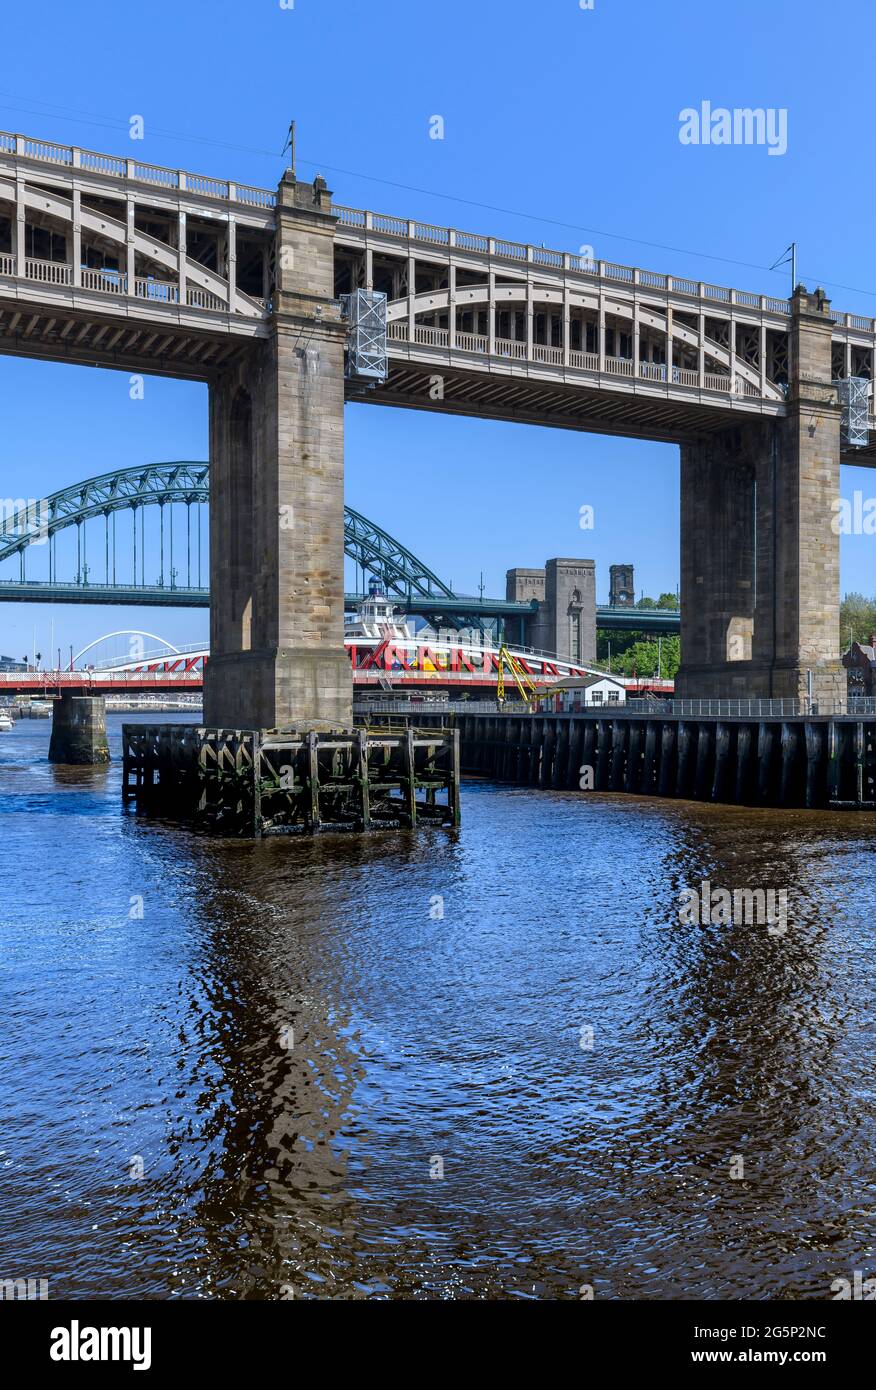 Drei Brücken, die Newcastle und Gateshead verbinden: Tyne, Swing und die High Level Bridge mit zwei Decks für Fußgänger, Busse und Züge. Stockfoto